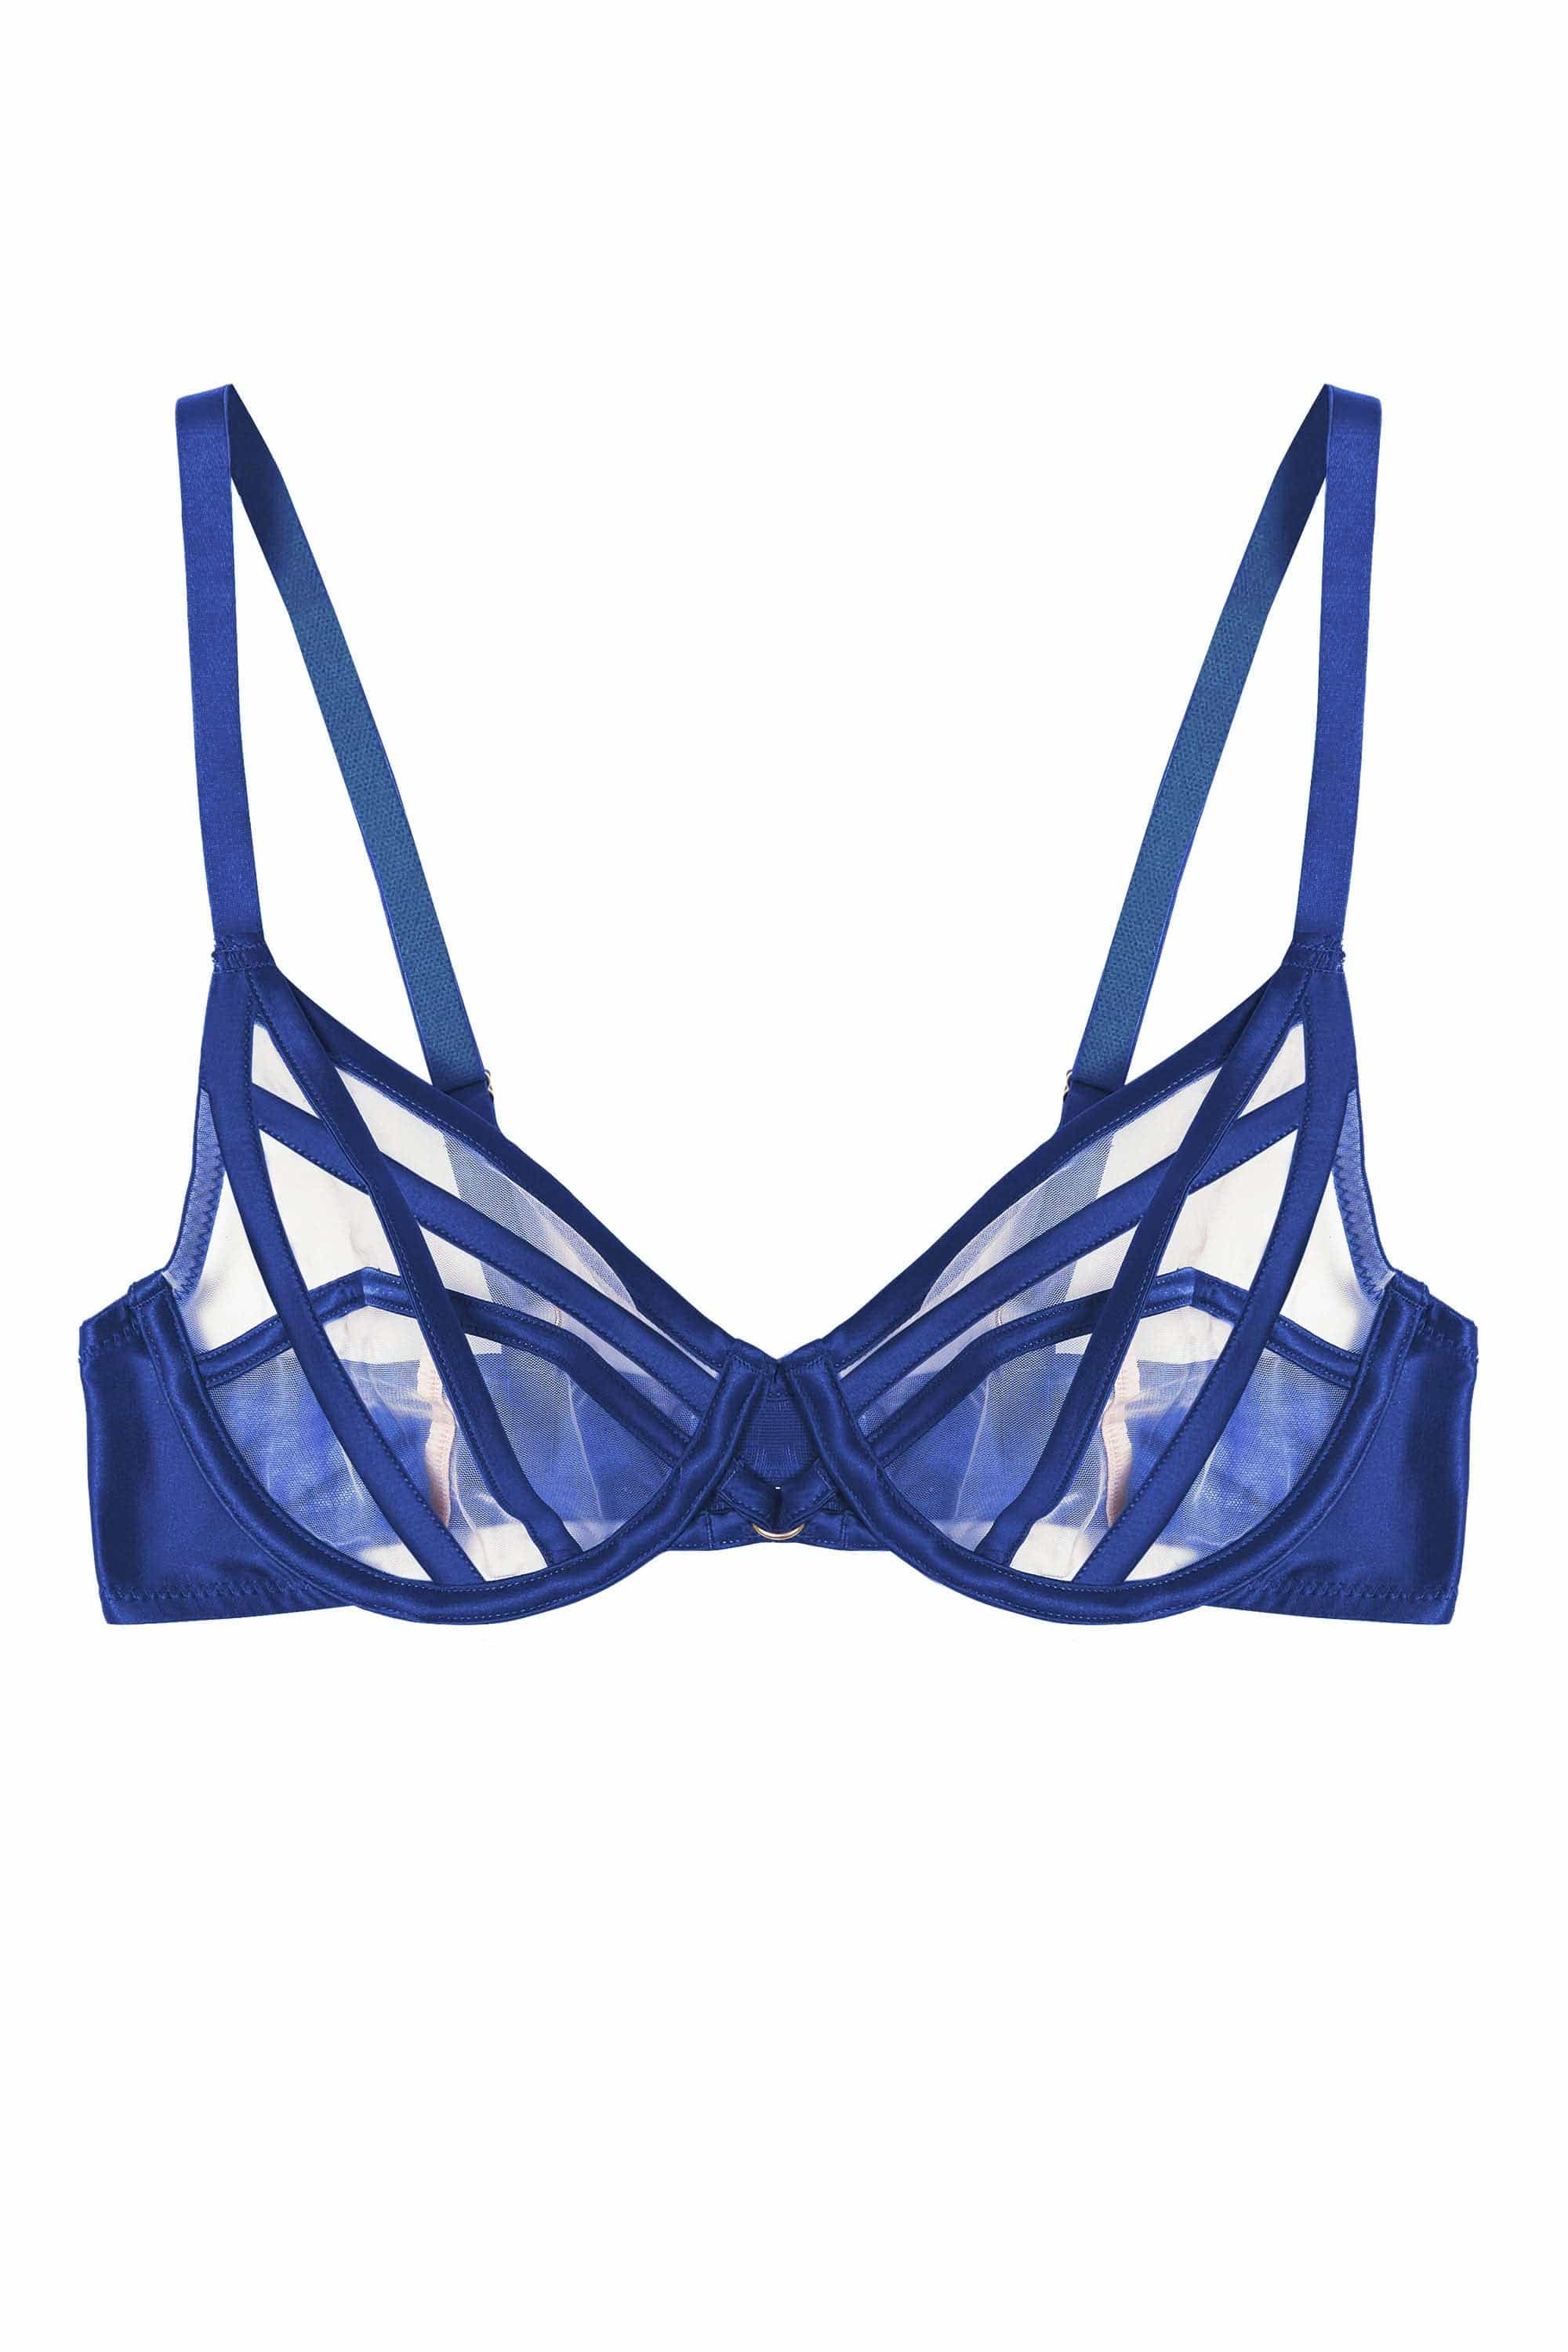 Cobalt blue plunge bra with straps